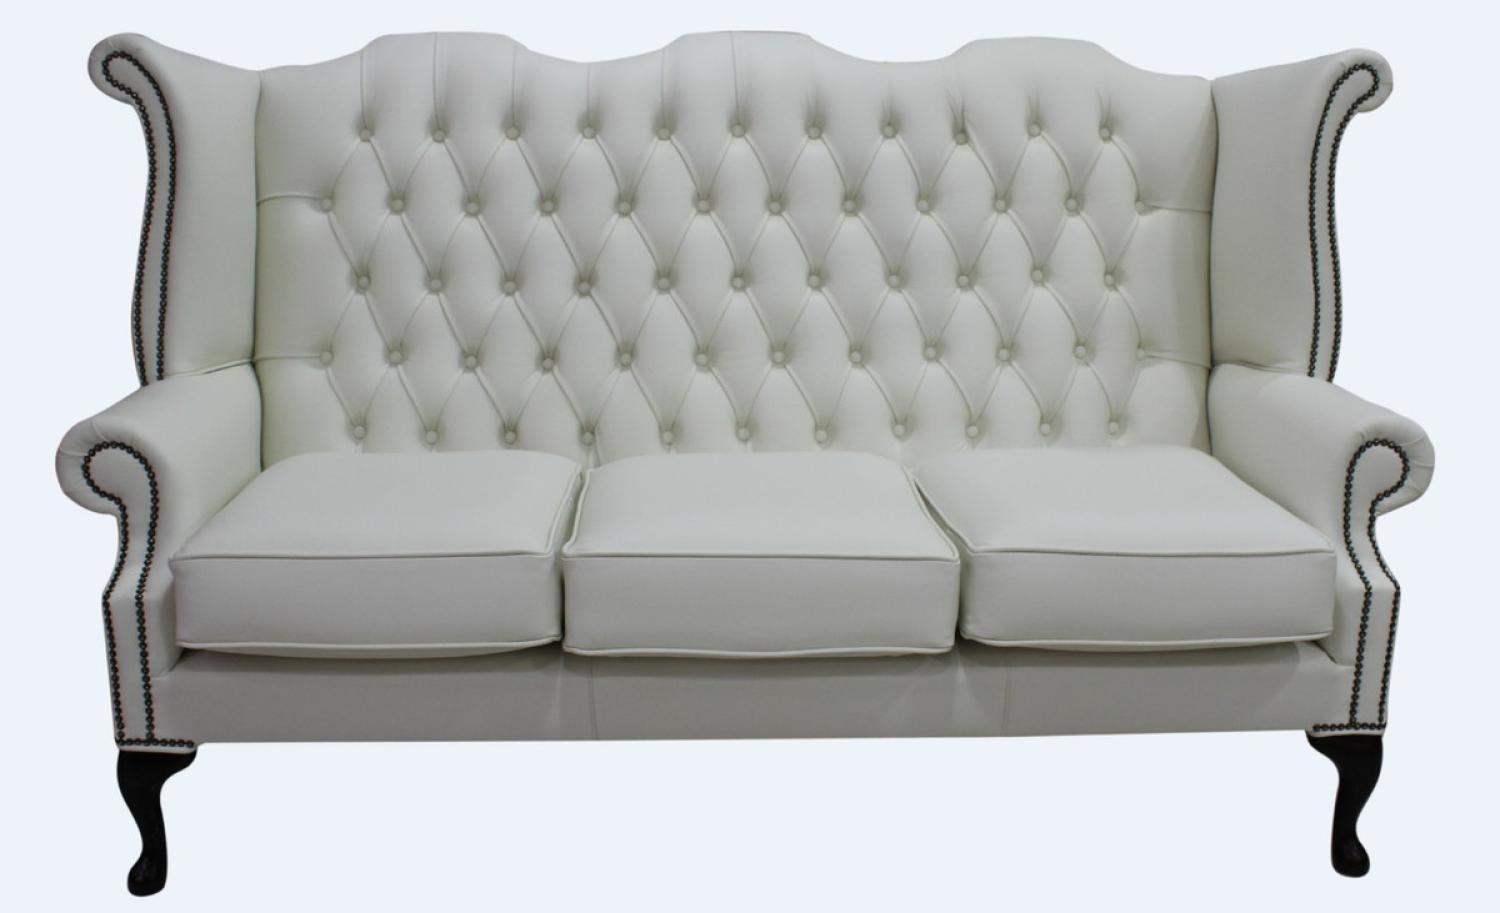 Casa Padrino Luxus Echtleder 3er Sofa Weiß Vintage Antik Look 183 x 90 x H. 105 cm Bild 1